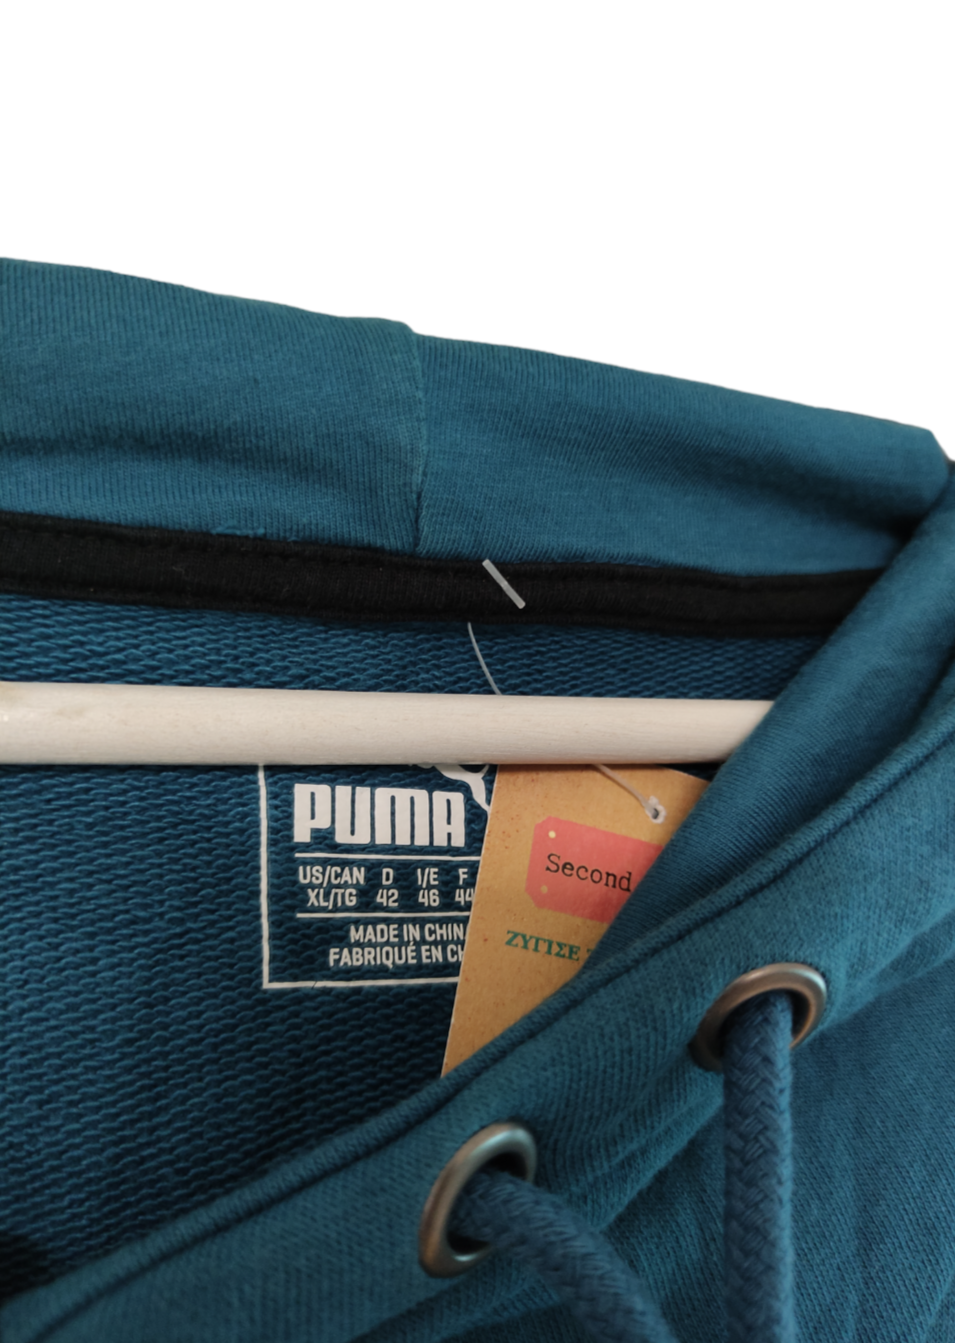 Γυναικεία Φούτερ Μπλούζα PUMA σε Πετρόλ χρώμα (L/XL)